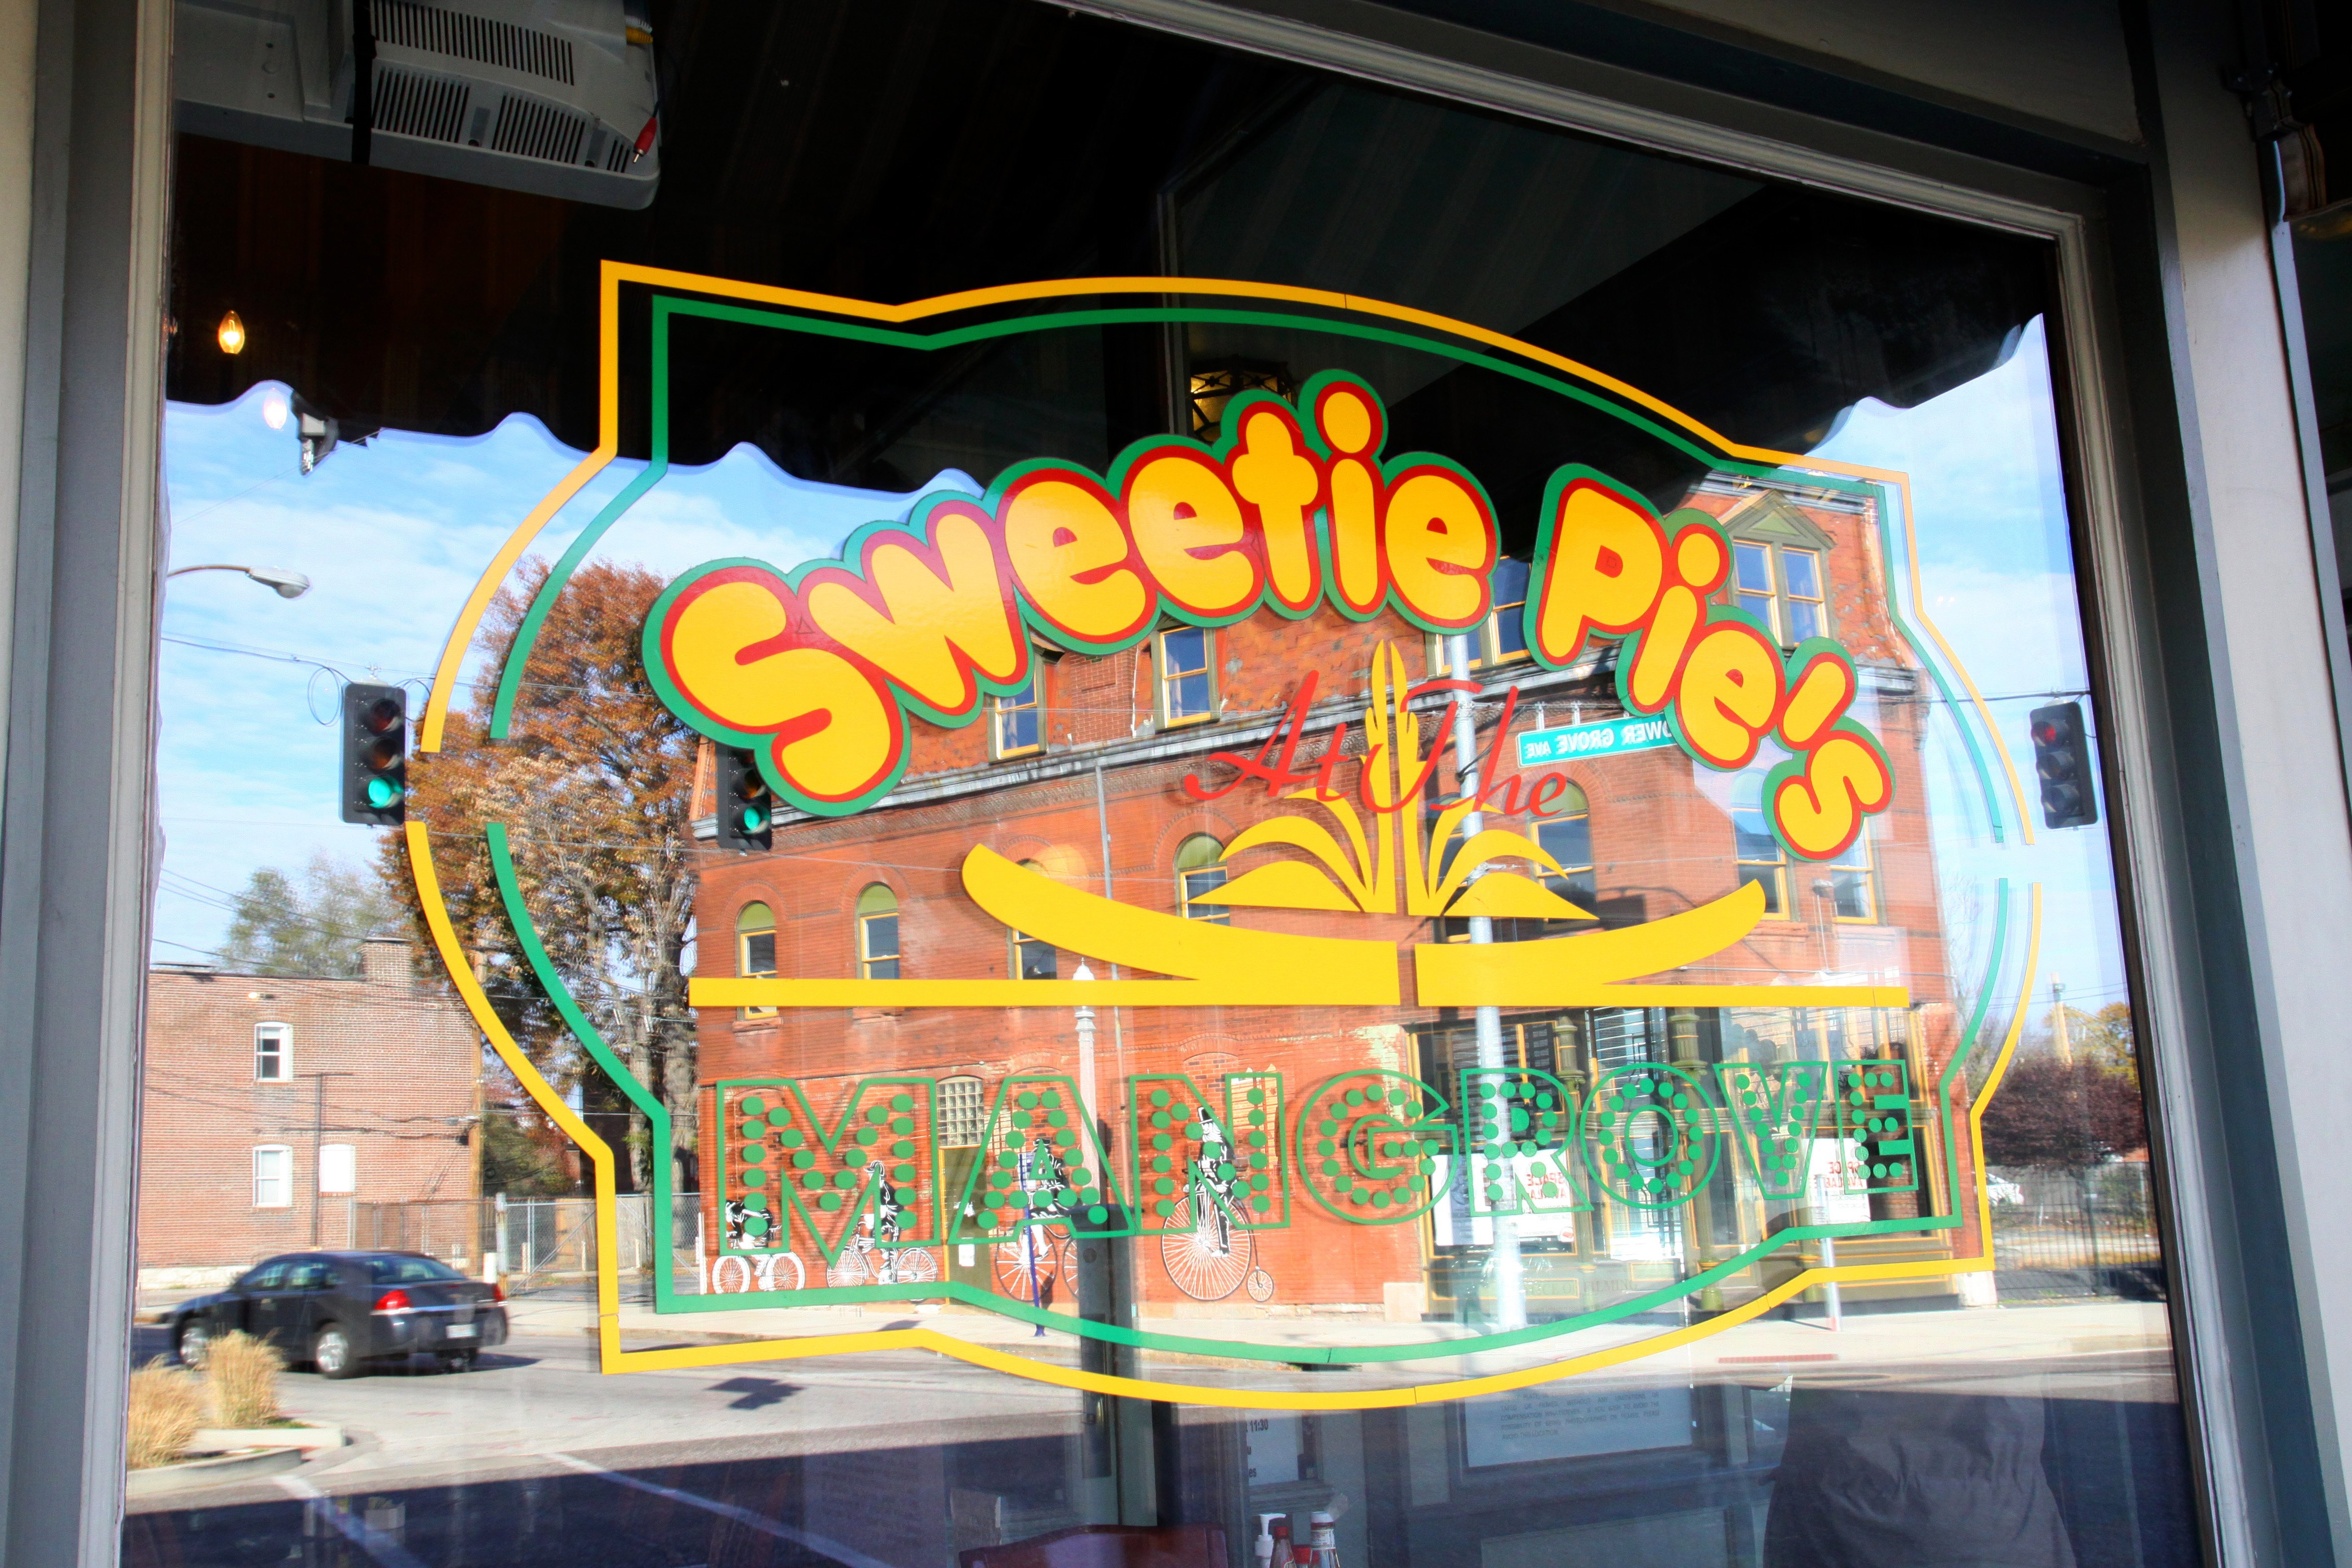 sweetie pies restaurant illinois